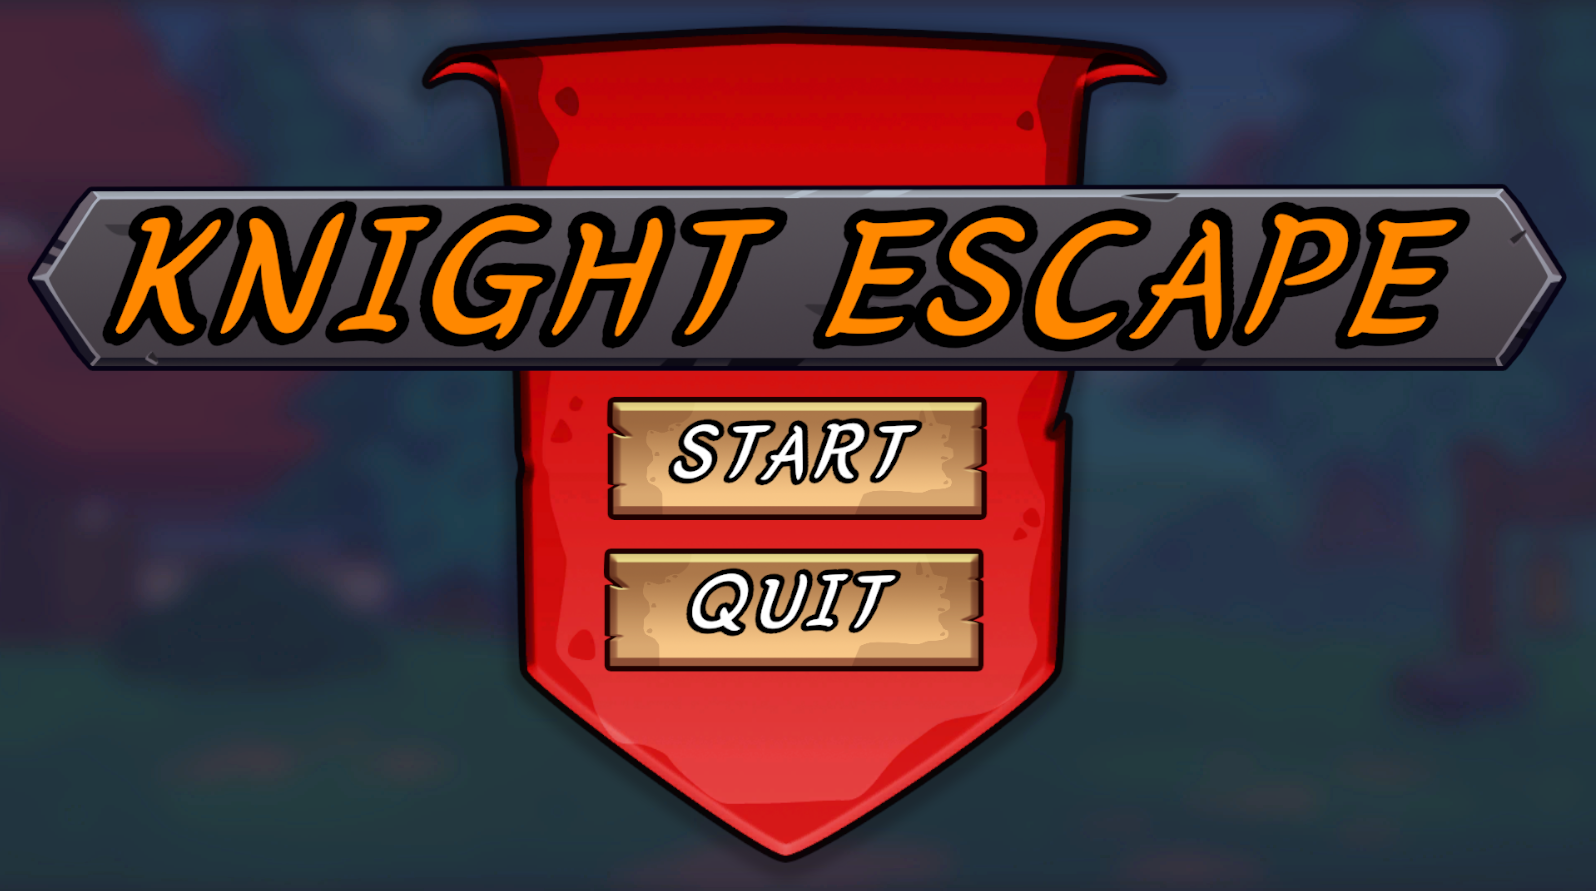 Knight Escape